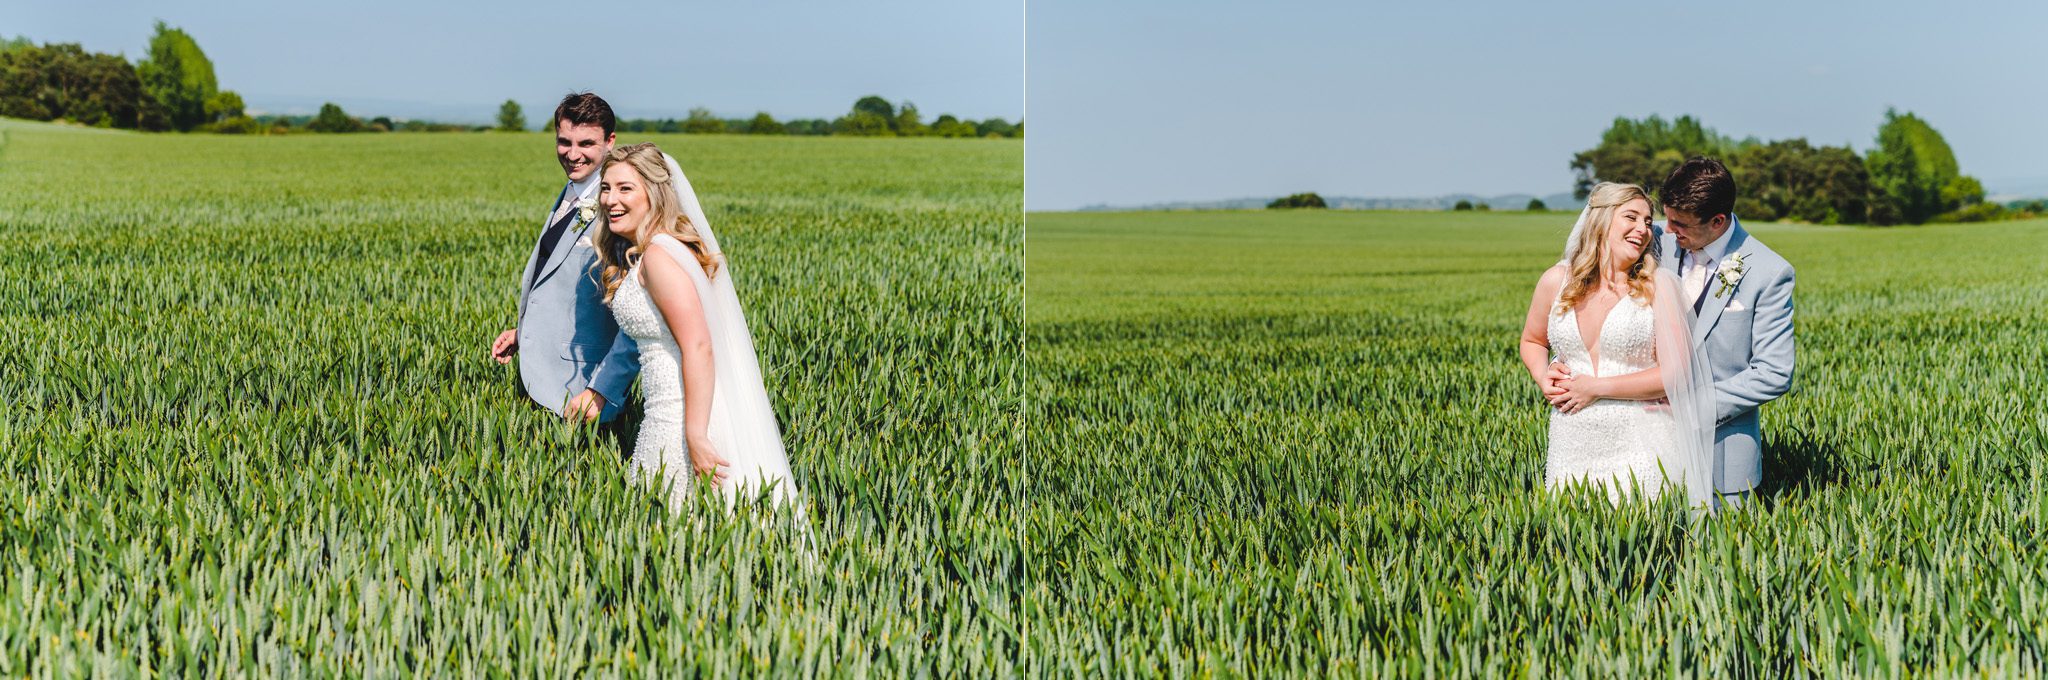 lapstone barn wedding photography